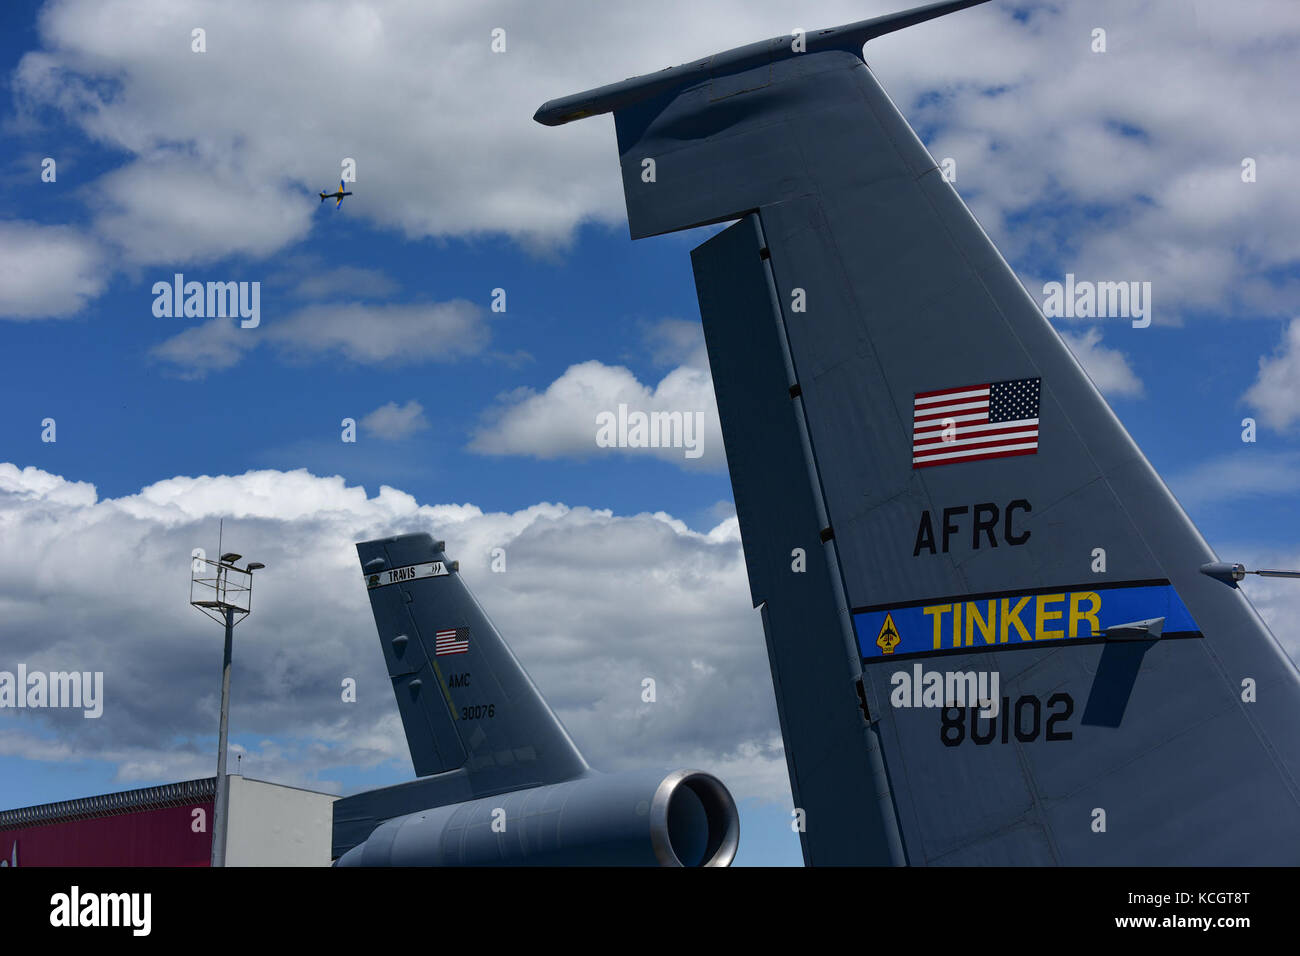 El Escuadrón de humo de la Fuerza Aérea Brasileña participa en Feria Aeronáutica Internacional—Colombia 2017 en el Aeropuerto Internacional José María Córdova en Rionegro, Colombia, 13 de julio de 2017. La Fuerza Aérea de los Estados Unidos participa en el programa aéreo de cuatro días con dos F-16 de la Guardia Nacional Aérea de Carolina del Sur como pantallas estáticas, además de pantallas estáticas de un KC-135, KC-10, Junto con una demostración aérea F-16 del equipo de demostración Viper East del comando de combate aéreo.la participación militar de los Estados Unidos en la feria aérea ofrece una oportunidad para fortalecer nuestras relaciones entre militares y pa regionales Foto de stock